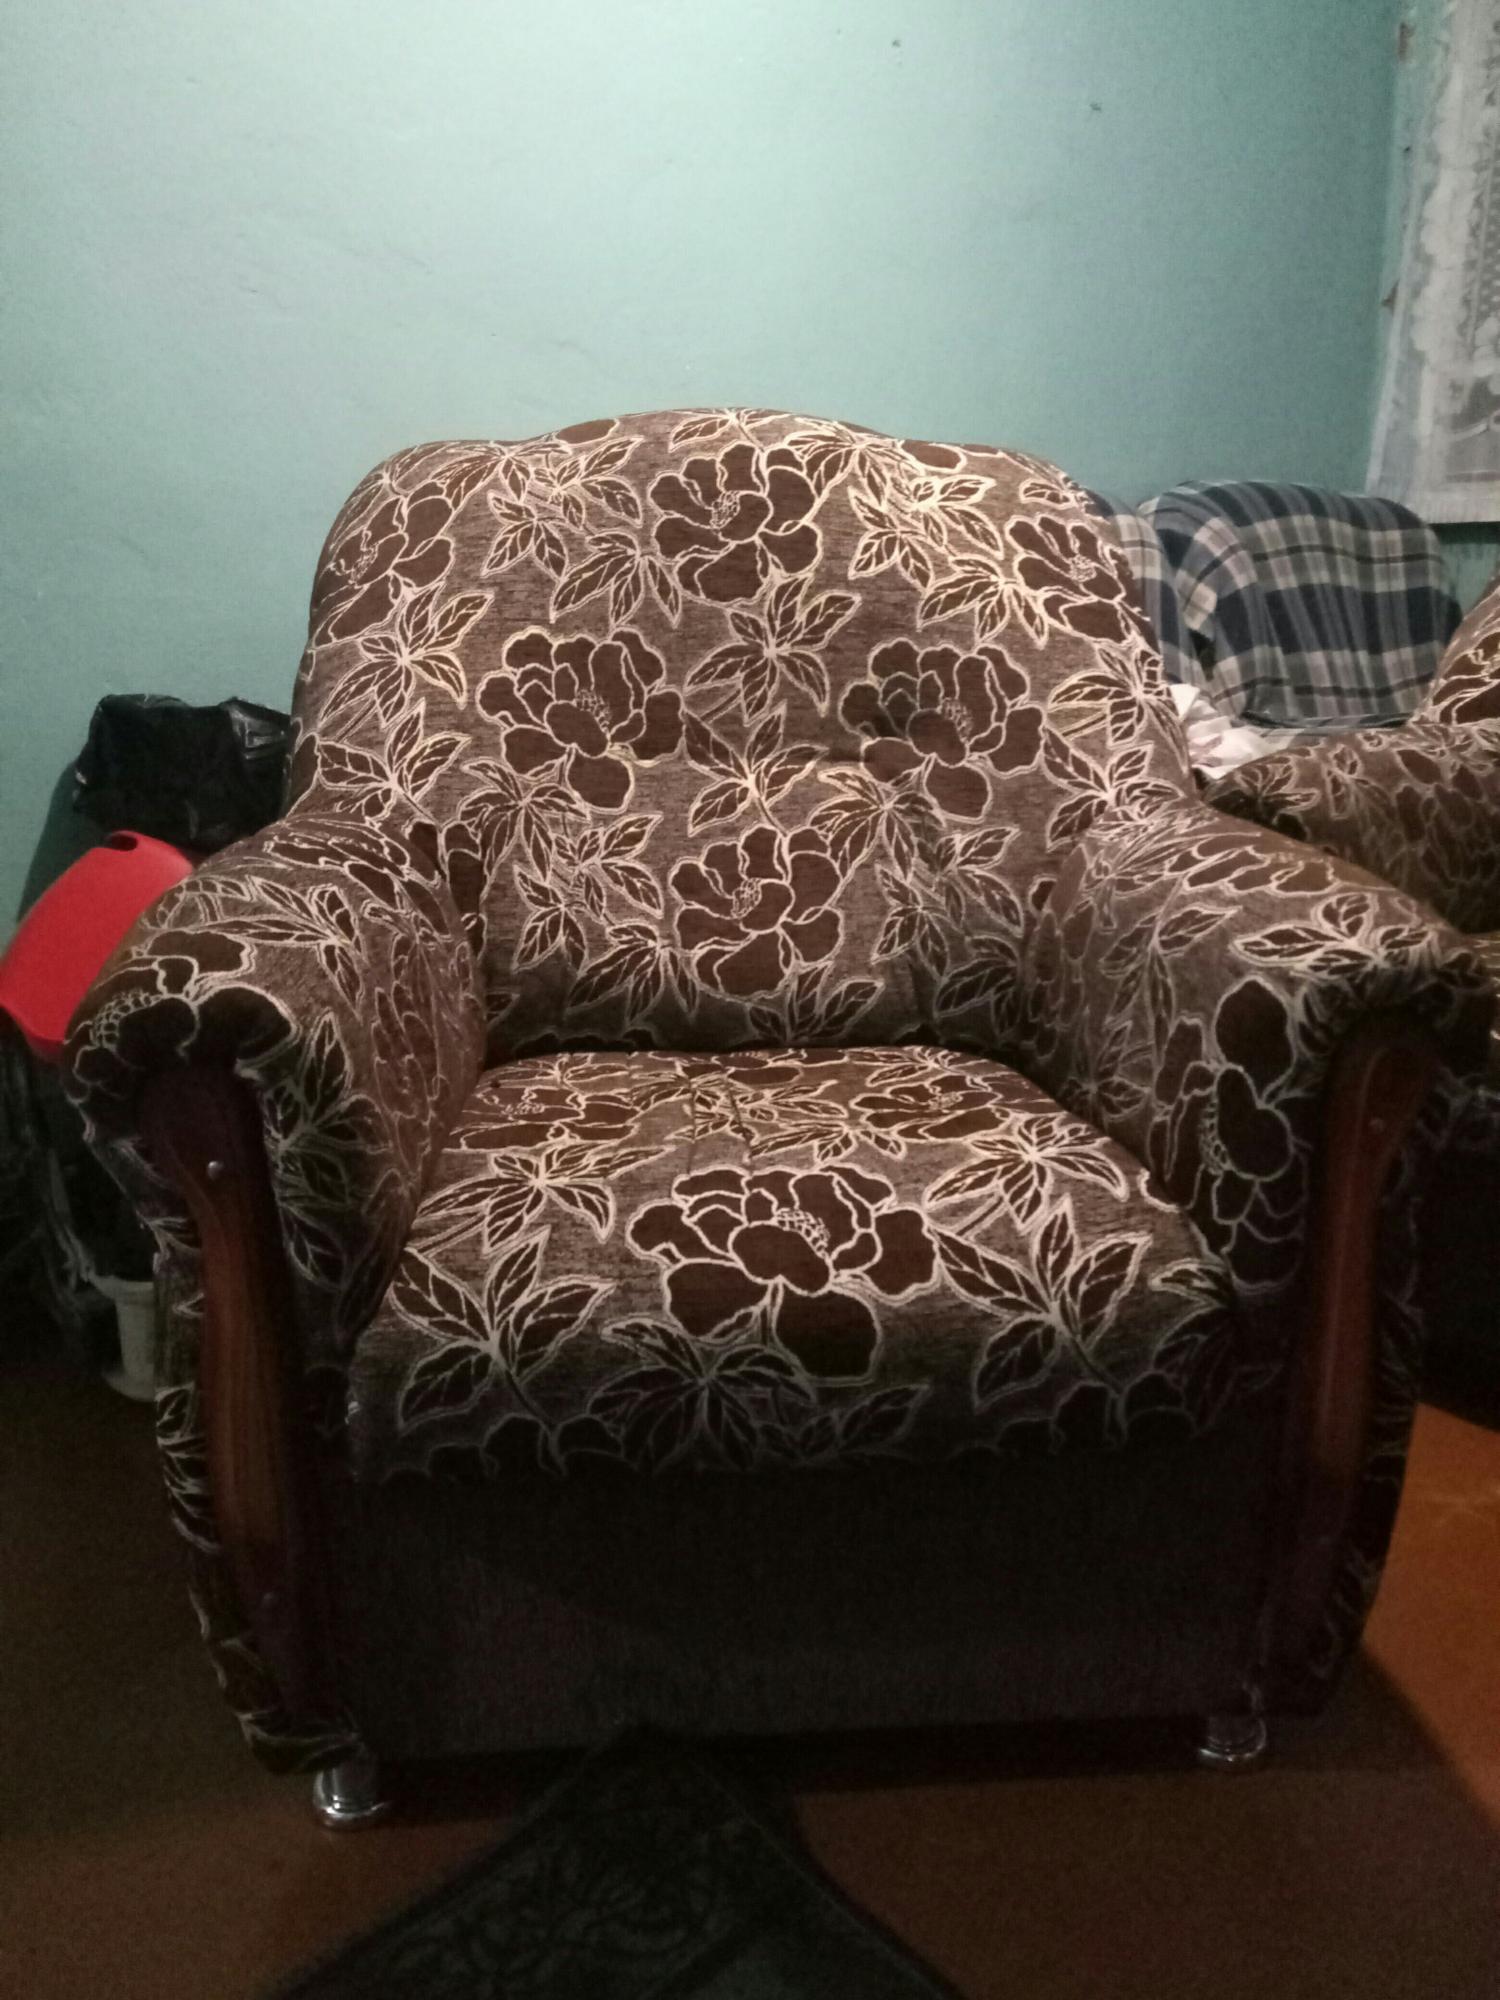 Кресло за 5000 рублей